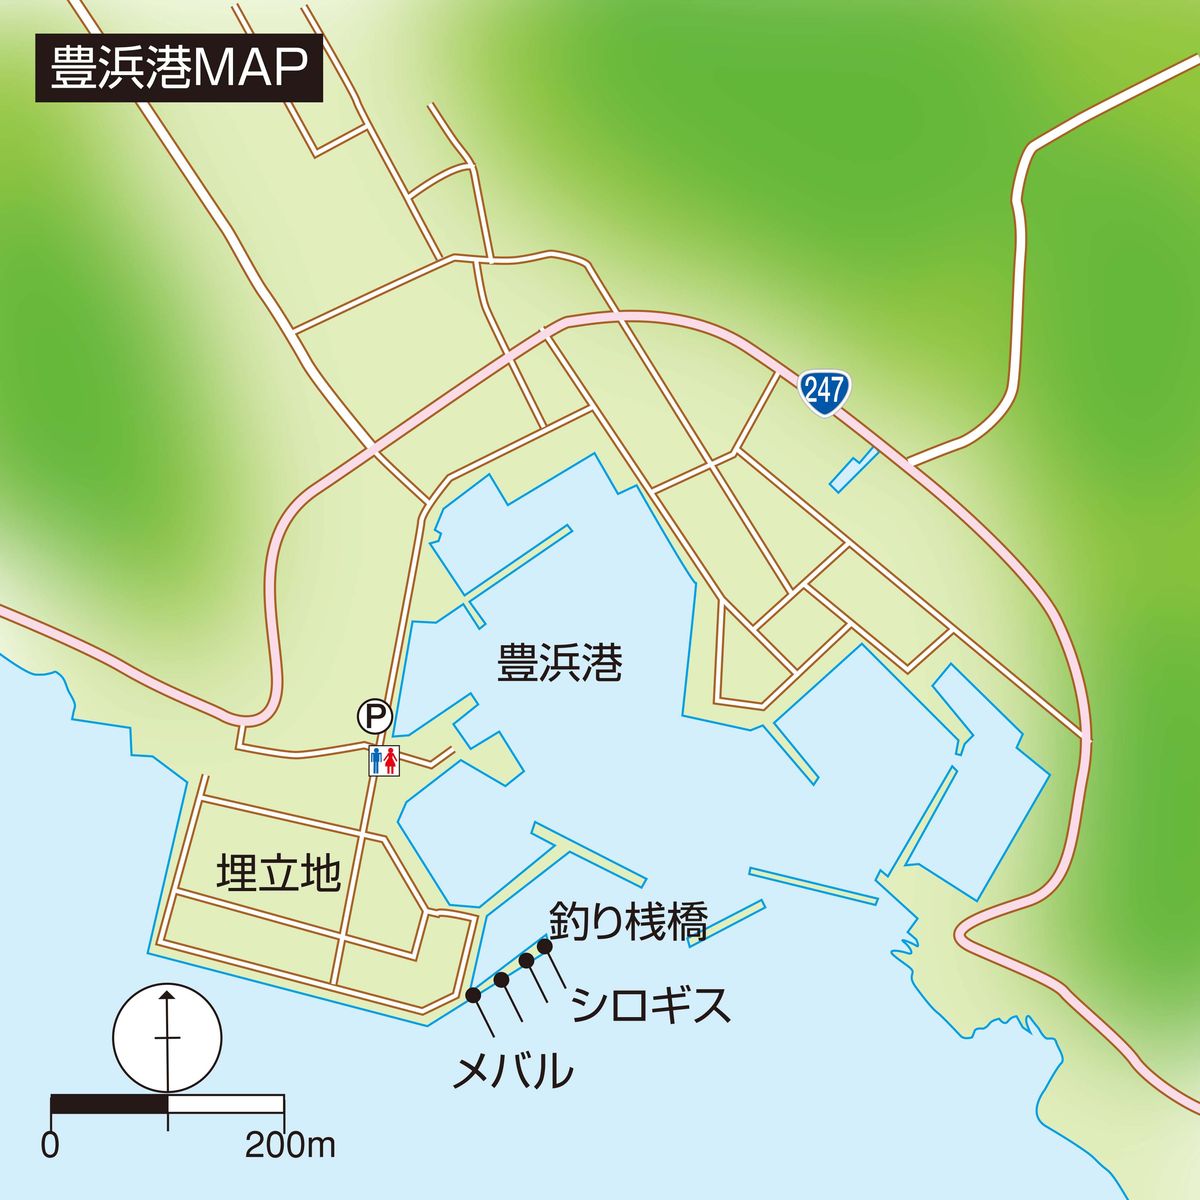 メバル シロギス釣り 愛知県南知多町 豊浜港 全国おすすめ釣り場